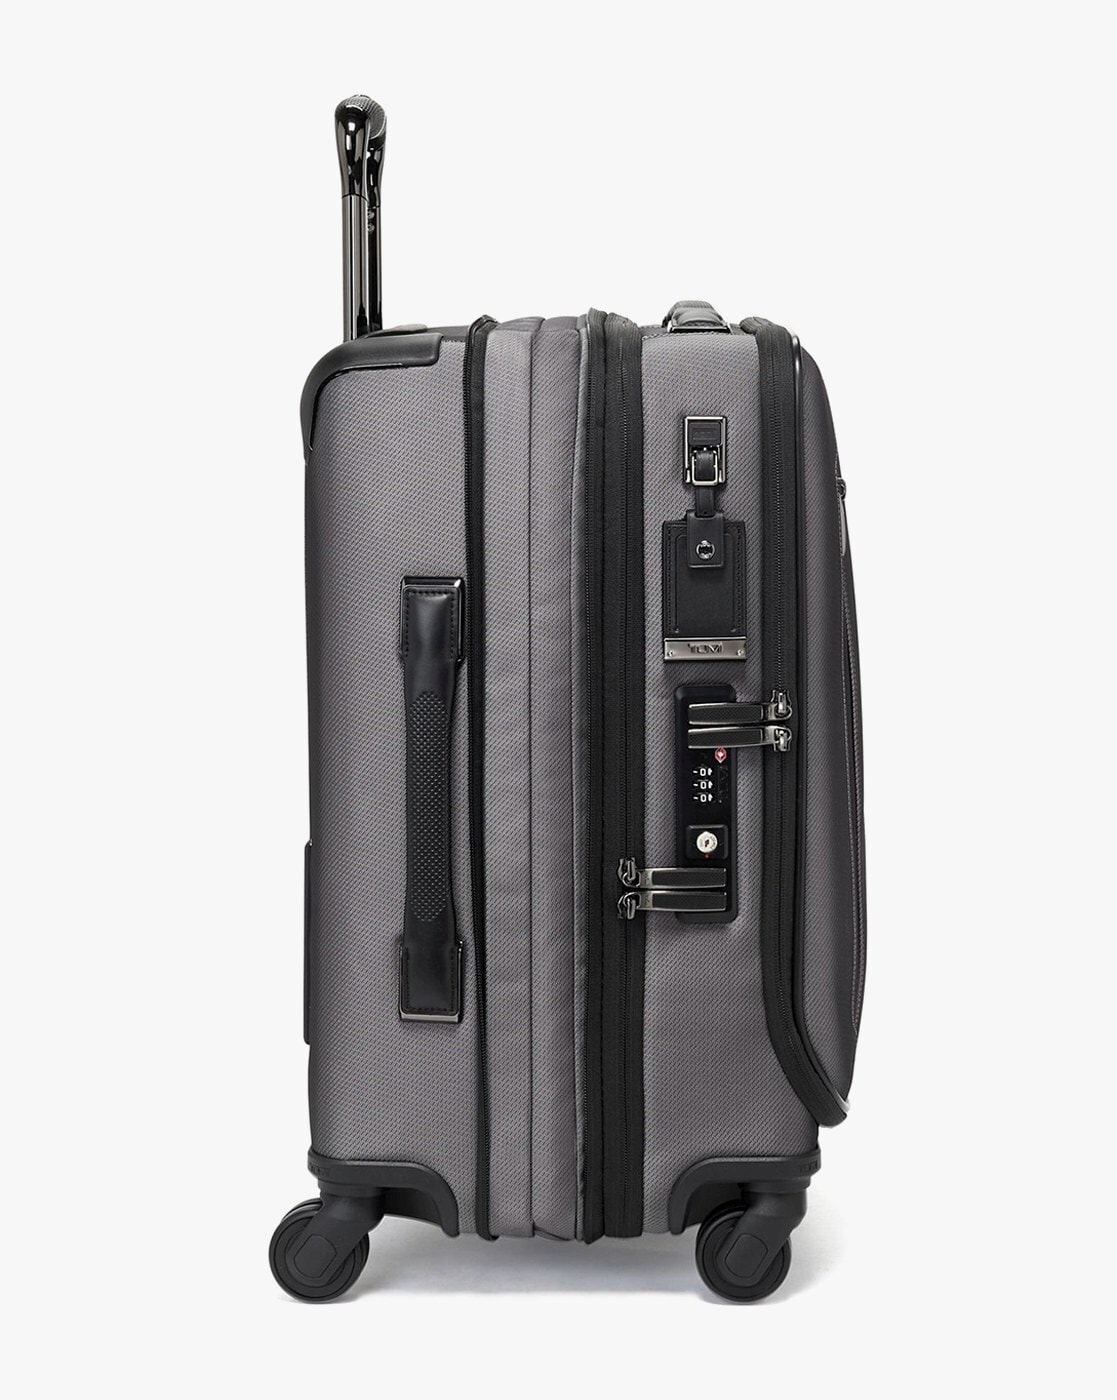 Designer Inspired Large capacity travel luggage - Grey